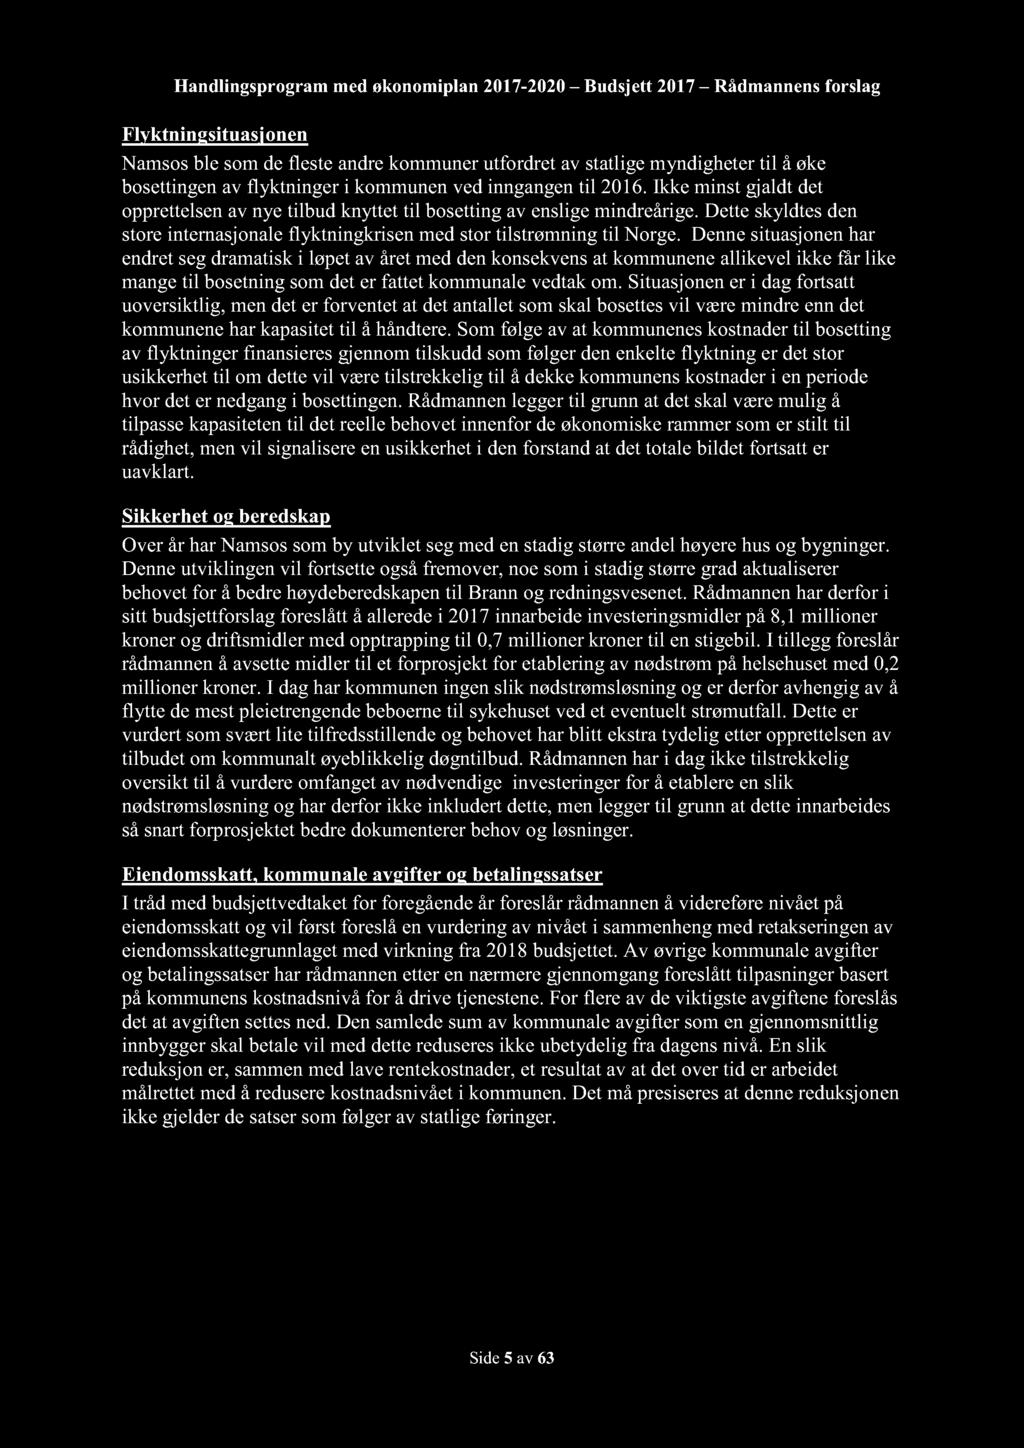 Handlingsprogram med økonomiplan 2017-2020 Budsjett 2017 Rådmannensforslag Flyktning situasjonen Namsosble somdeflesteandrekommunerutfordretavstatligemyndighetertil å øke bosettingenav flyktninger i